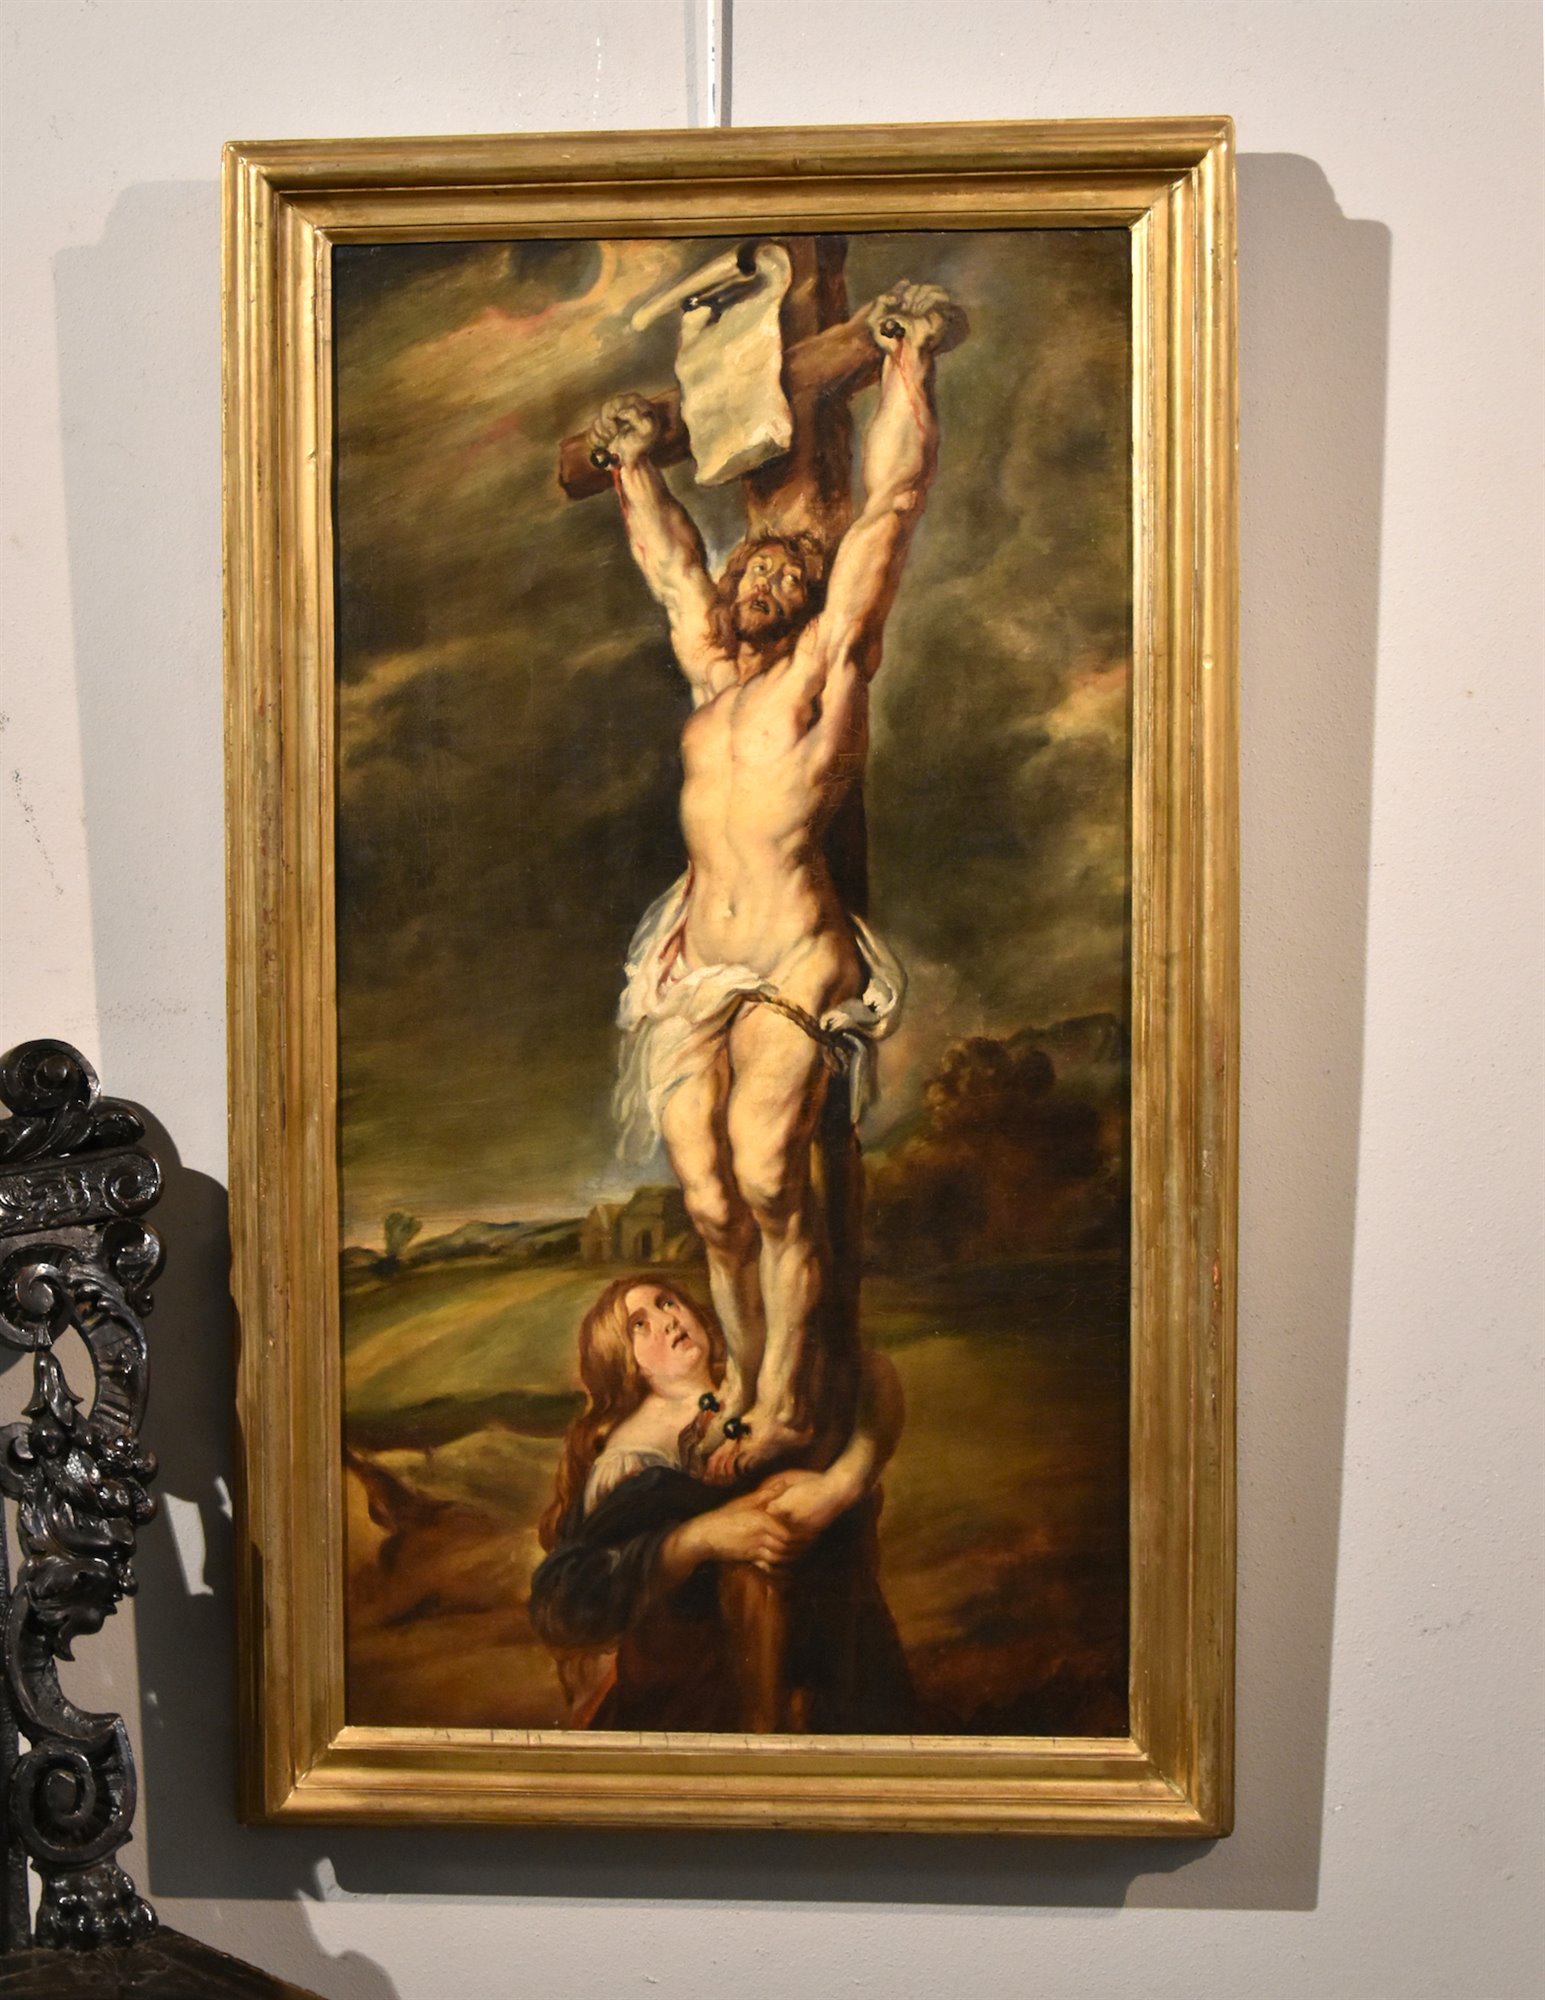 Crocifissione di Cristo con Santa Maria Maddalena